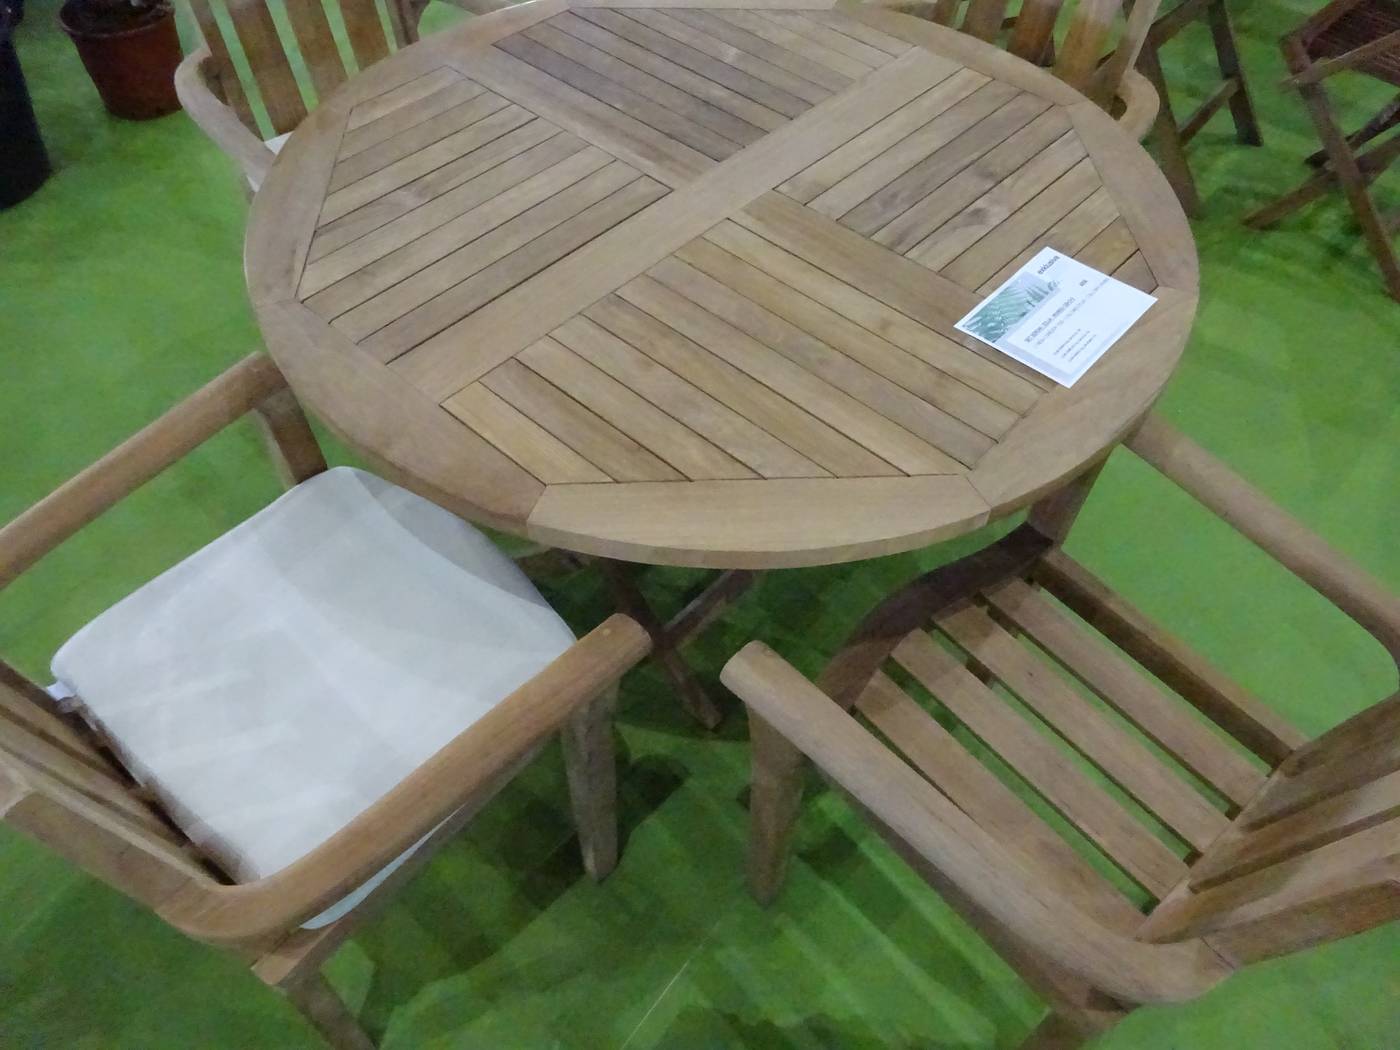 Conjunto Teka Seroni-King 120-4 - Conjunto de madera de teka: 1 mesa redonda plegable 120 cm. + 4 tumbonas con cojines